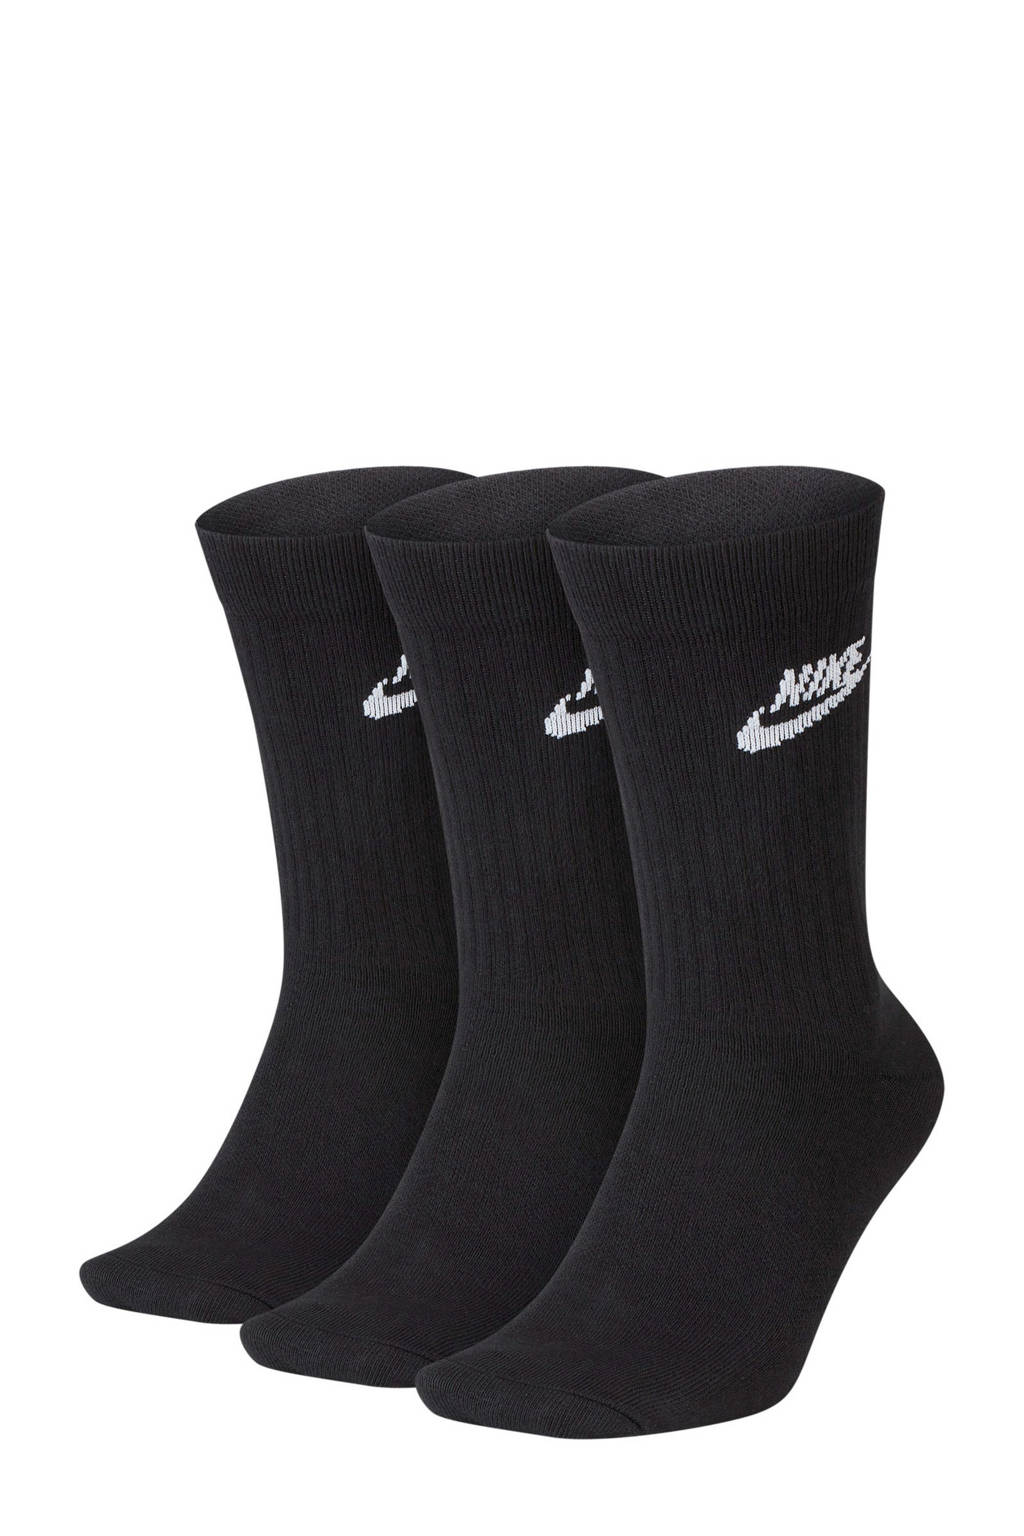 Nike sokken Everyday Essential zwart (set van 3), Zwart